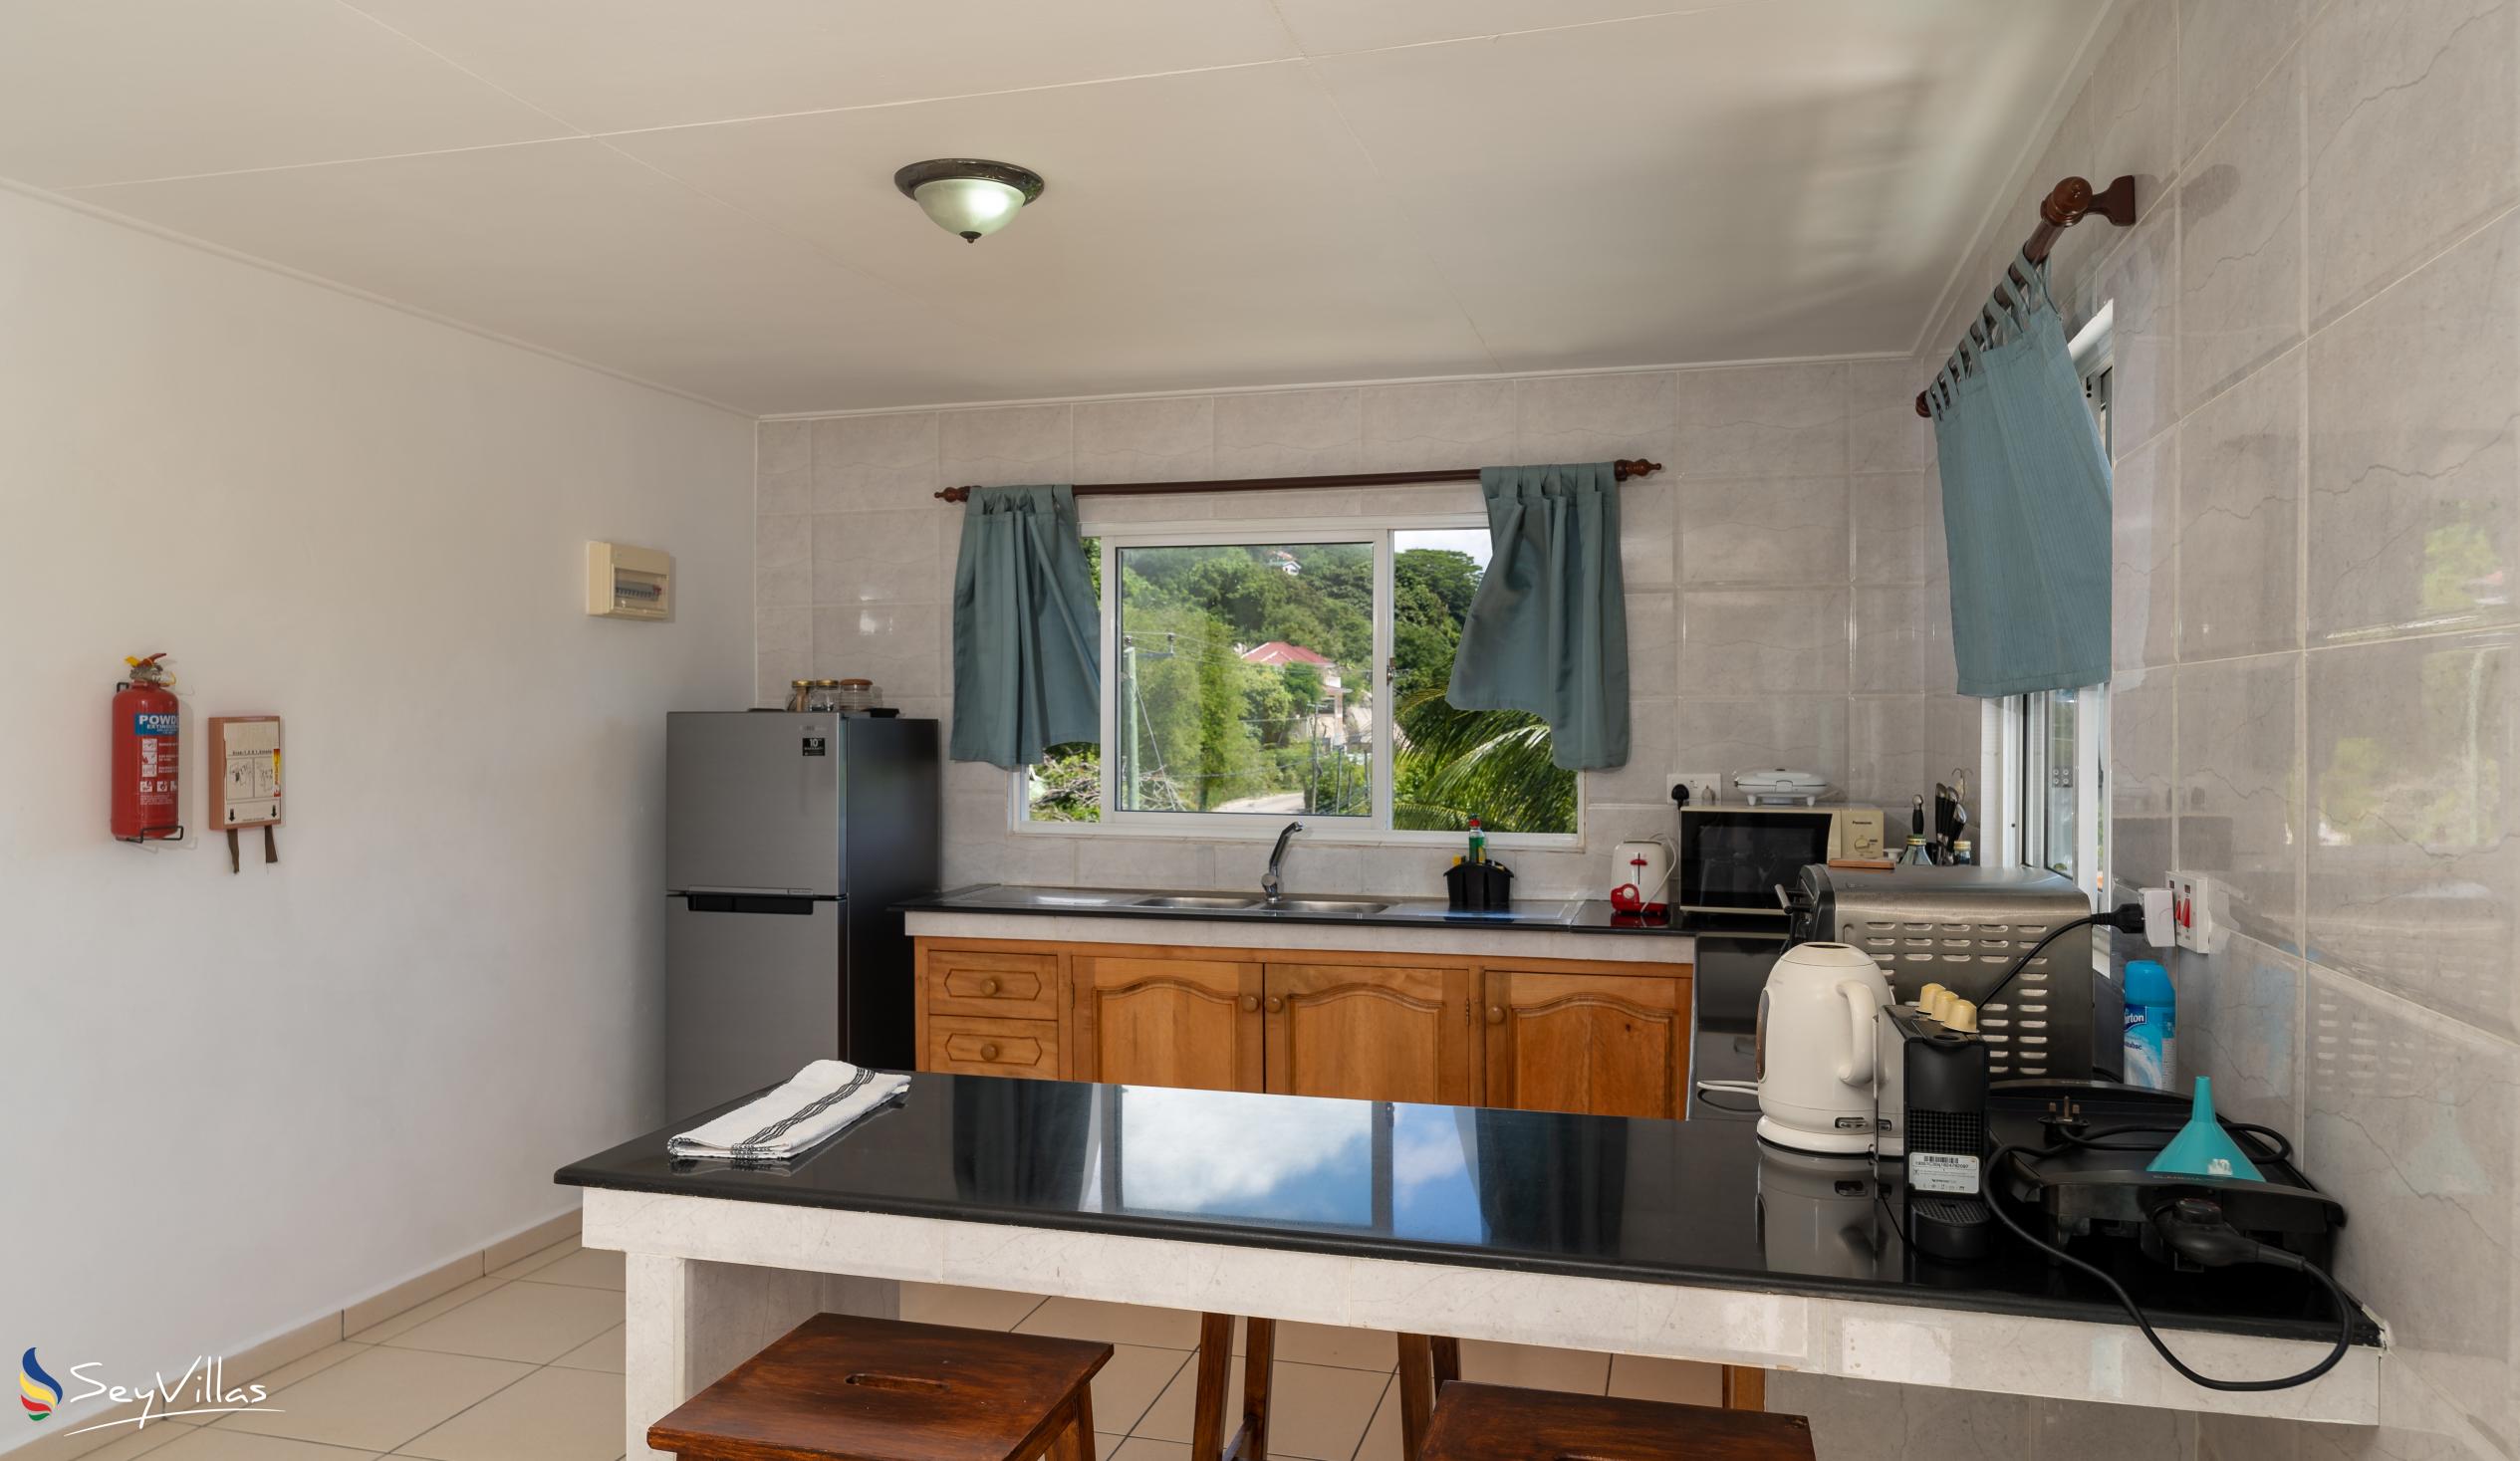 Foto 54: Chez Payet Self Catering - Appartamento con 2 camere Coco - Mahé (Seychelles)